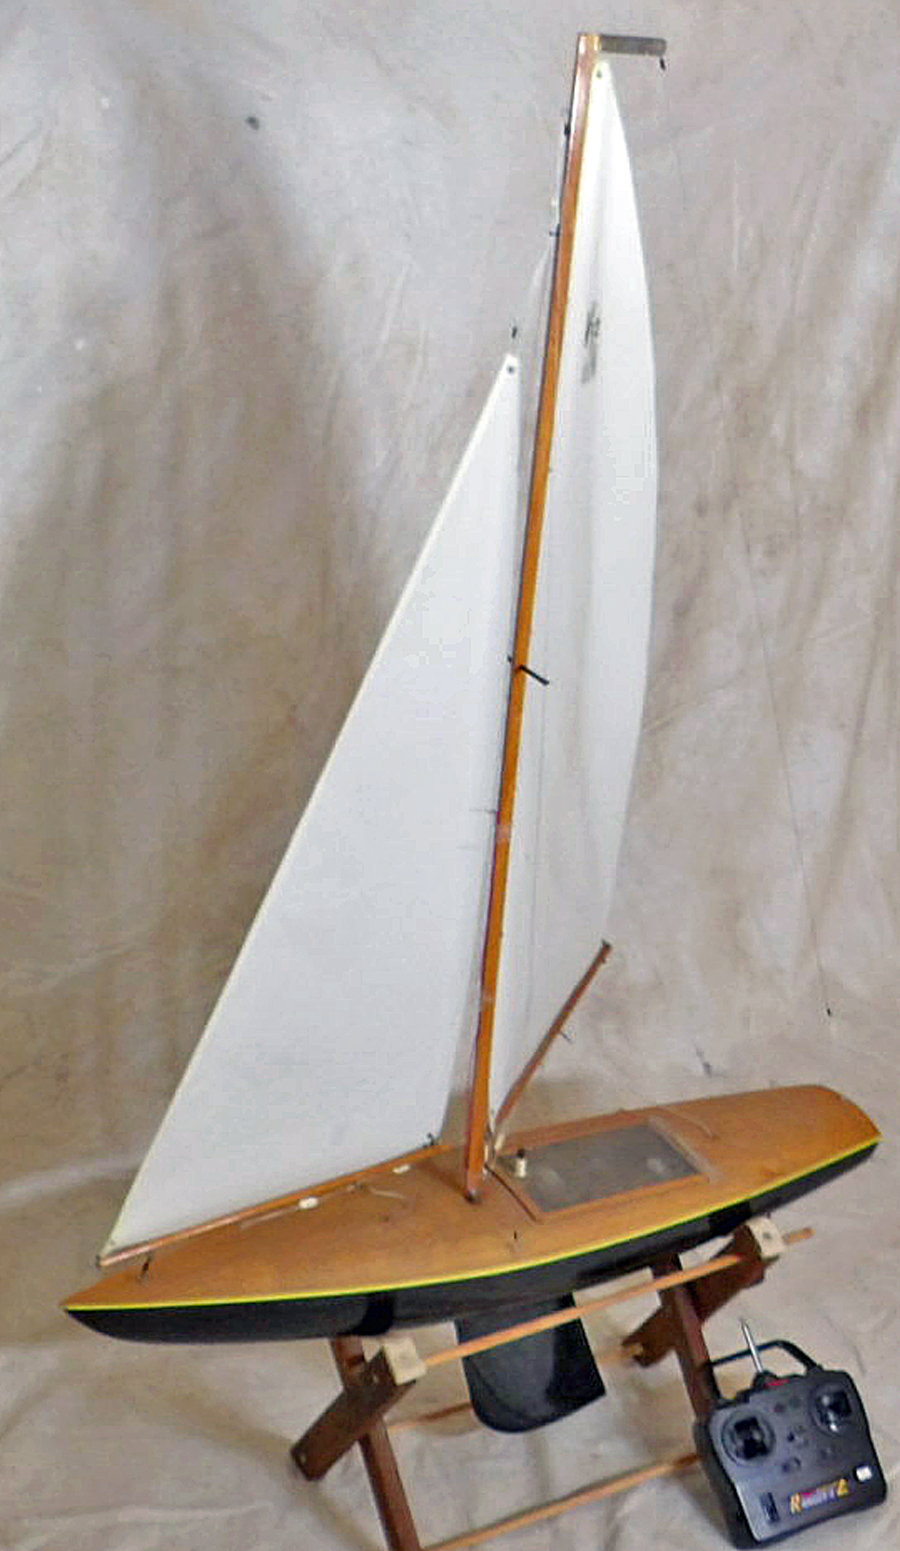 v 32 rc sailboat for sale